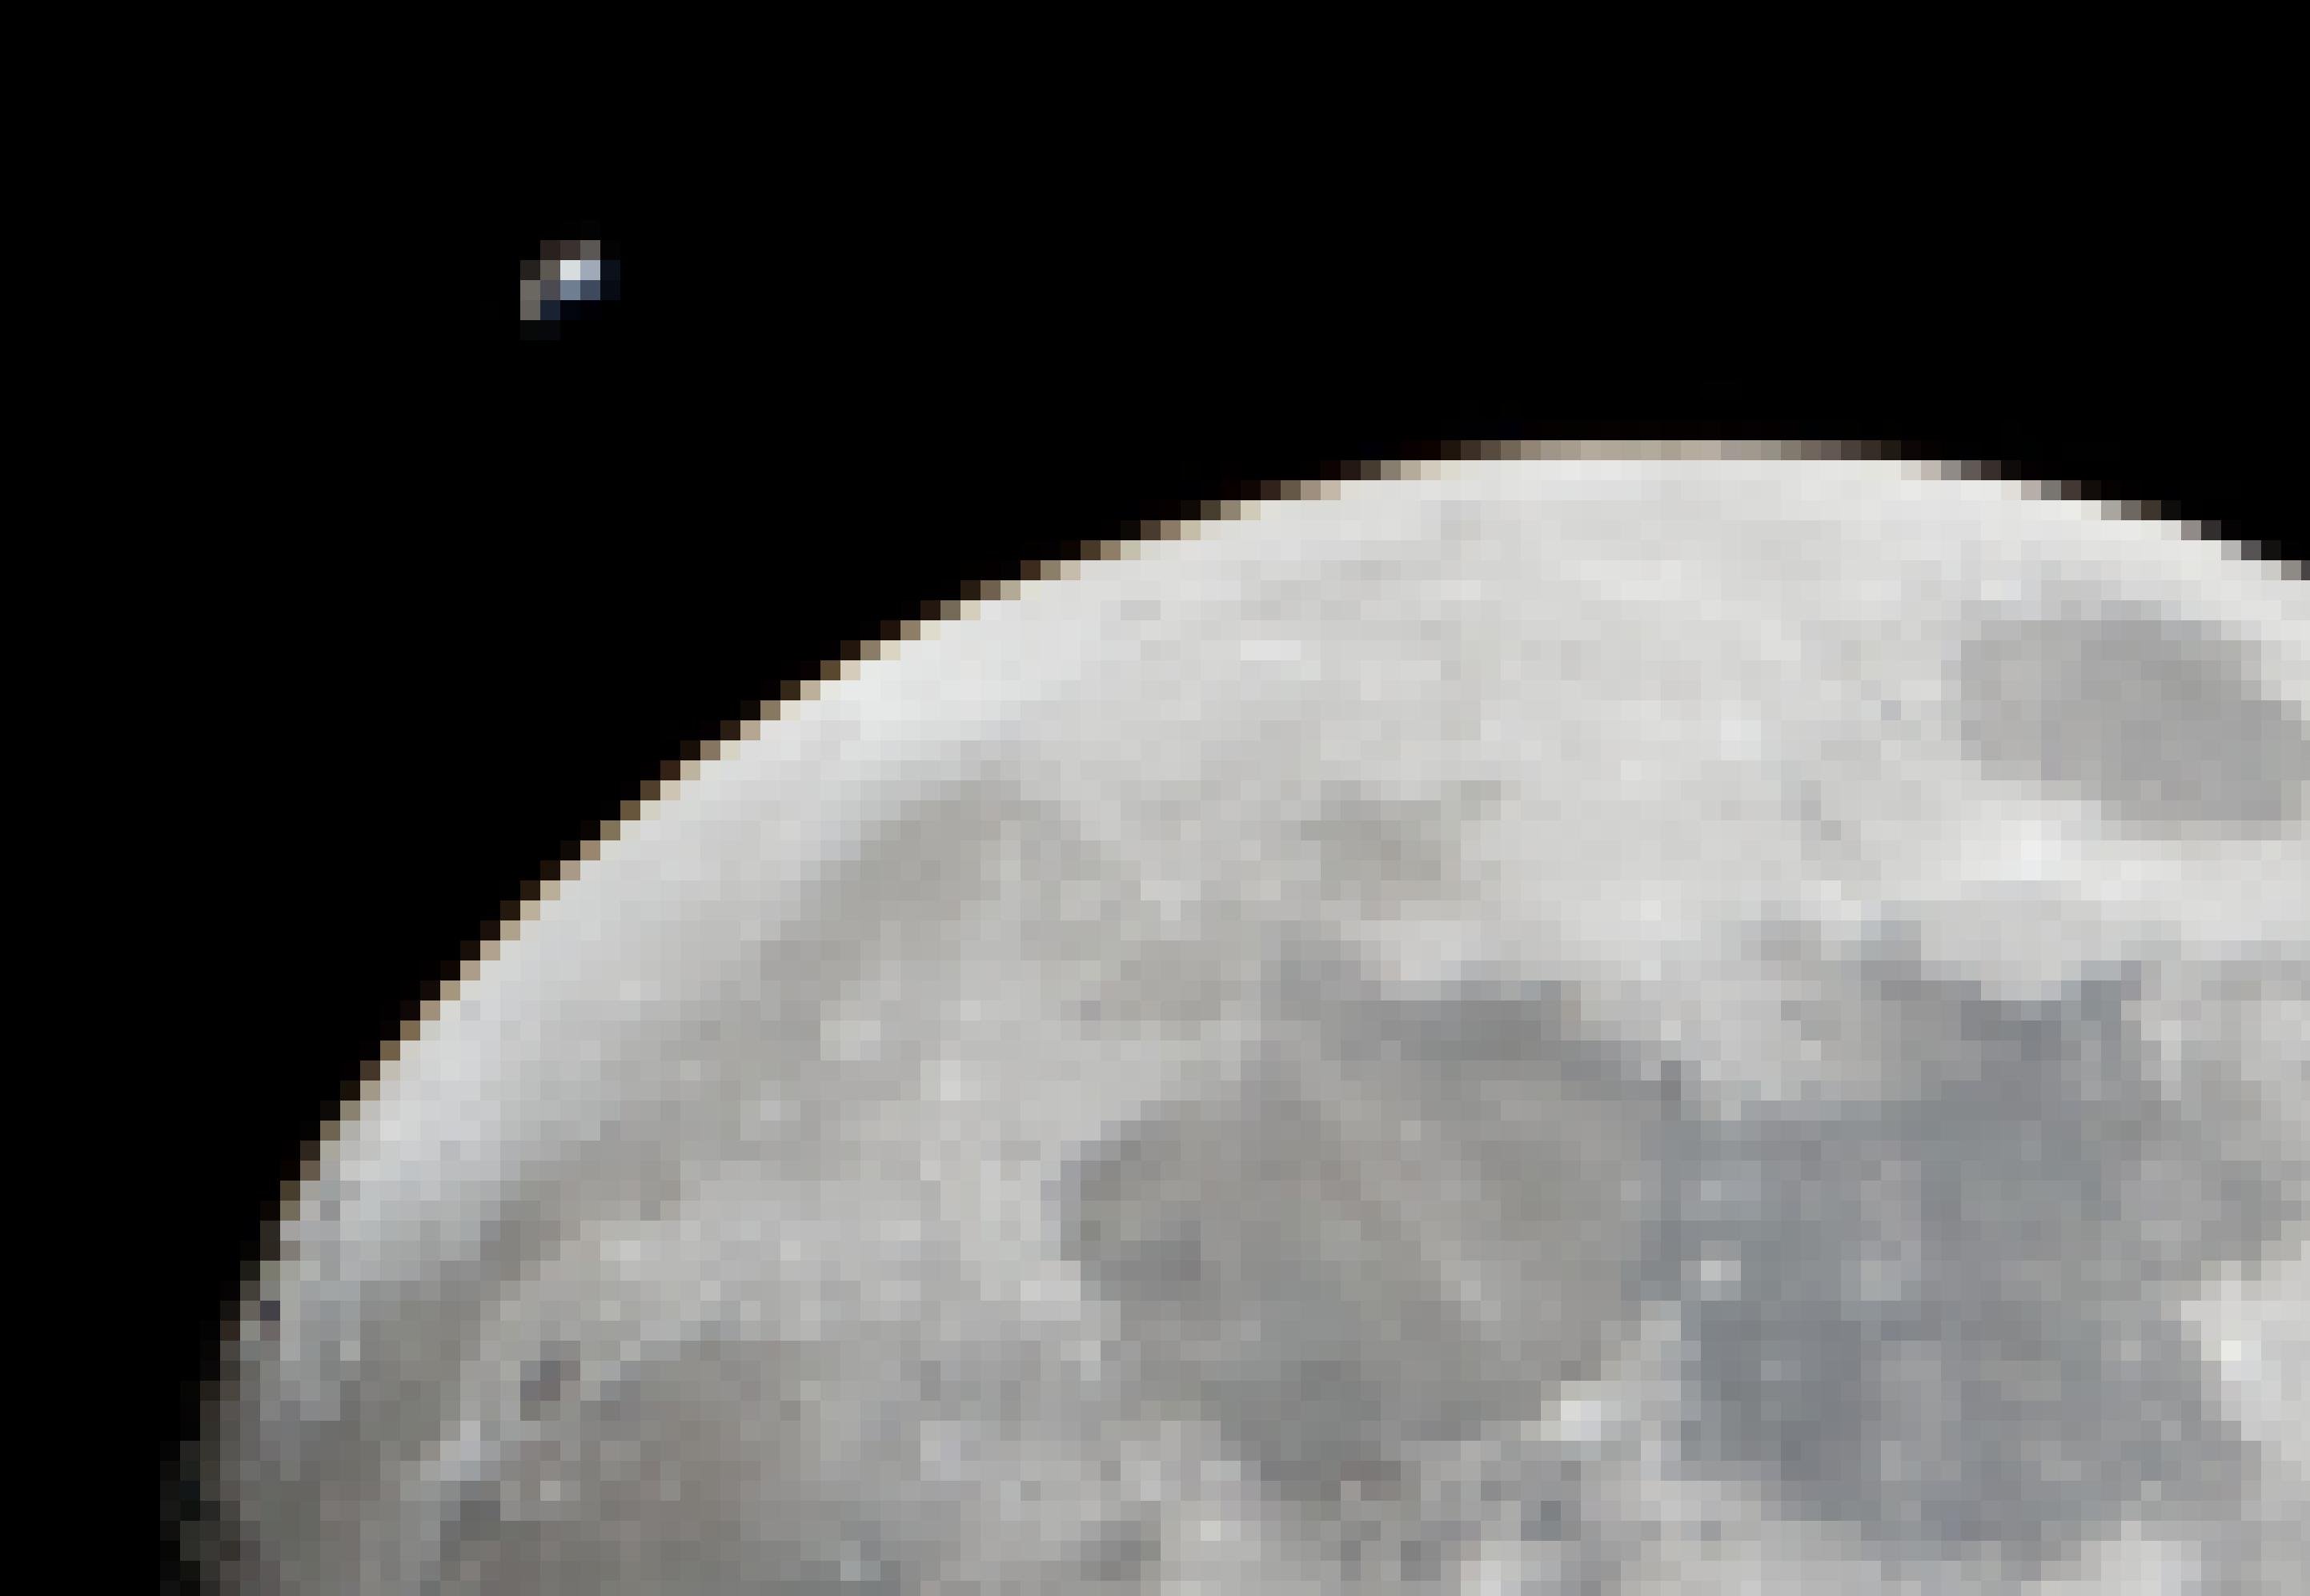 Eine große angeschnittene Mondscheibe, knapp daneben winzig klein die Internationale Raumstation, mit gerade so erkennbaren Solarzellen und Modulen. Das Bild wurde vom Erdboden aus aufgenommen – natürlich sind Station und Erdtrabant weit voneinander entfernt.